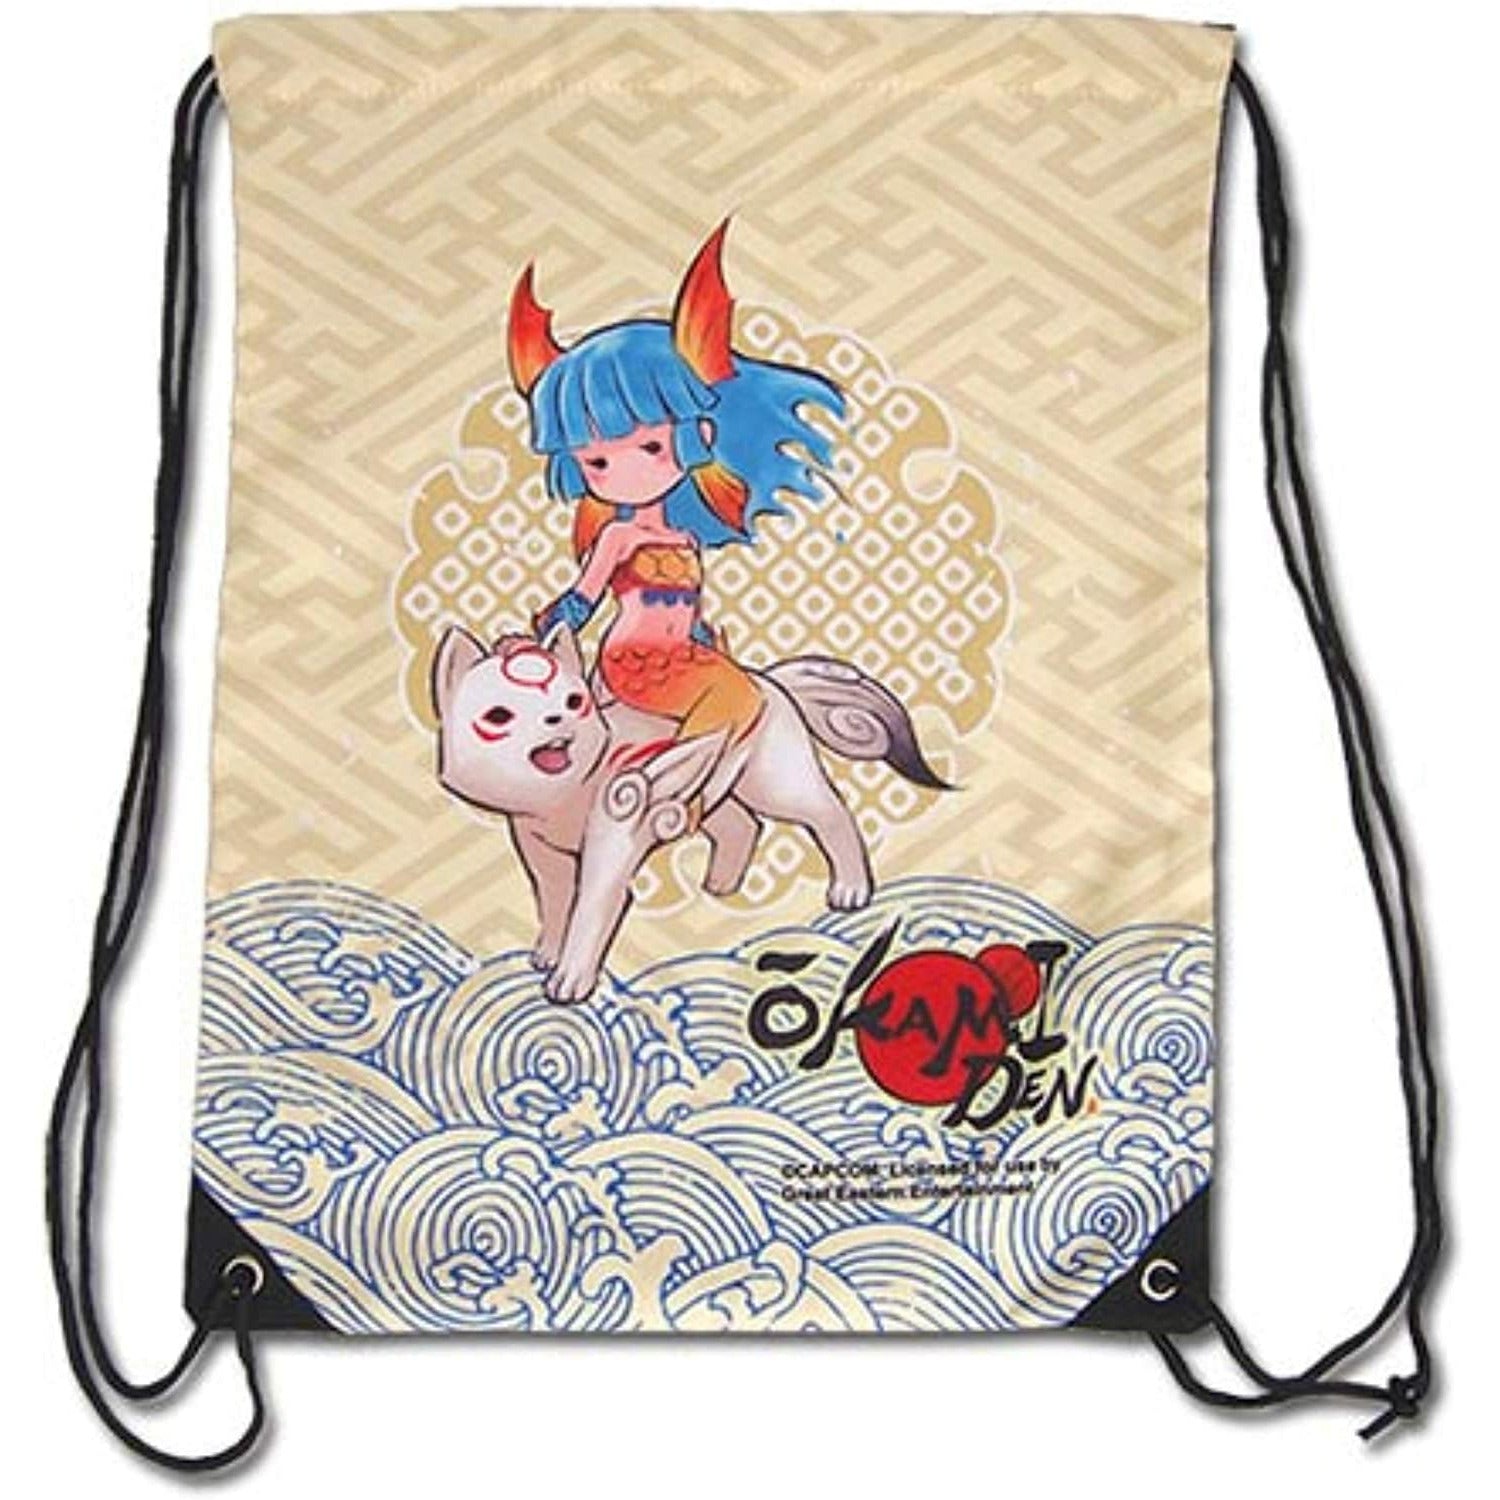 Okami Den Chibiterasu & Nanami Drawstring Bag